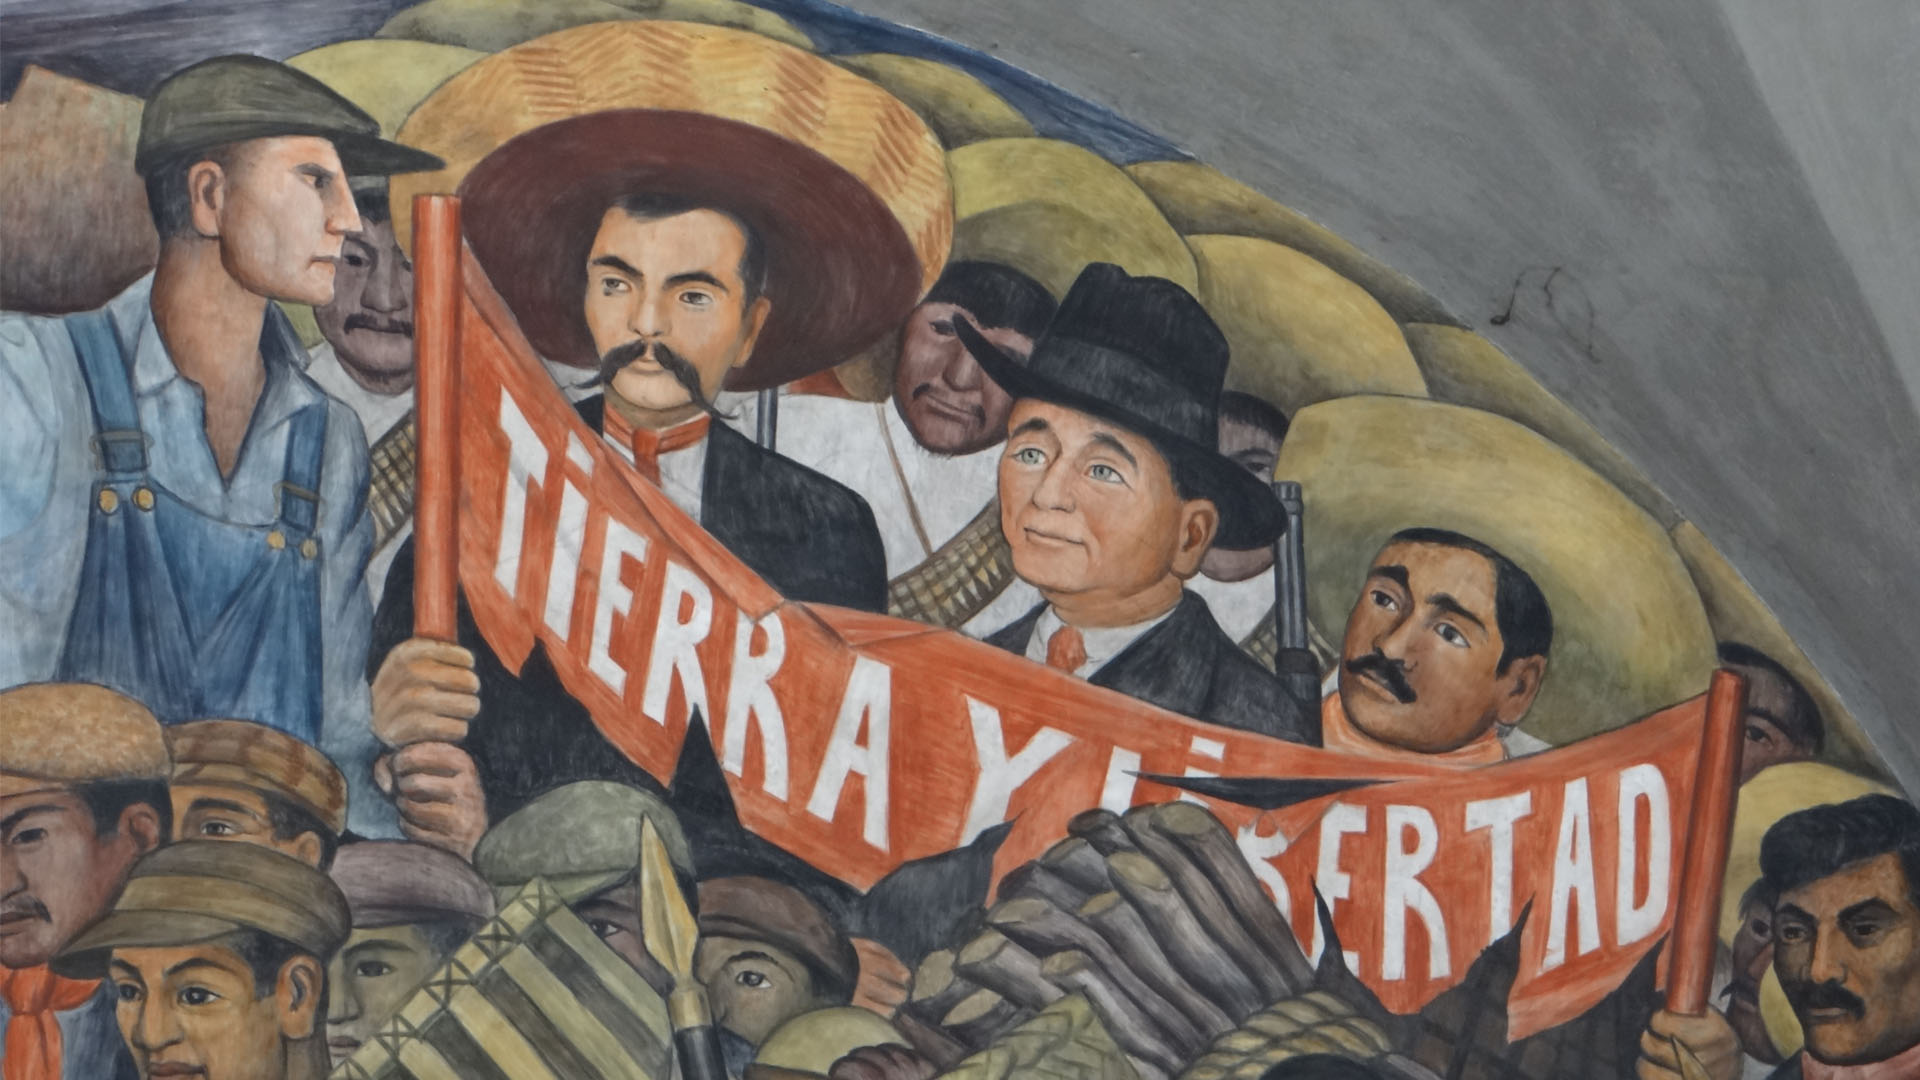 Obras de artistas como Frida Kahlo, Diego Rivera y José Clemente Orozco serán expuestas en el Grand Palais